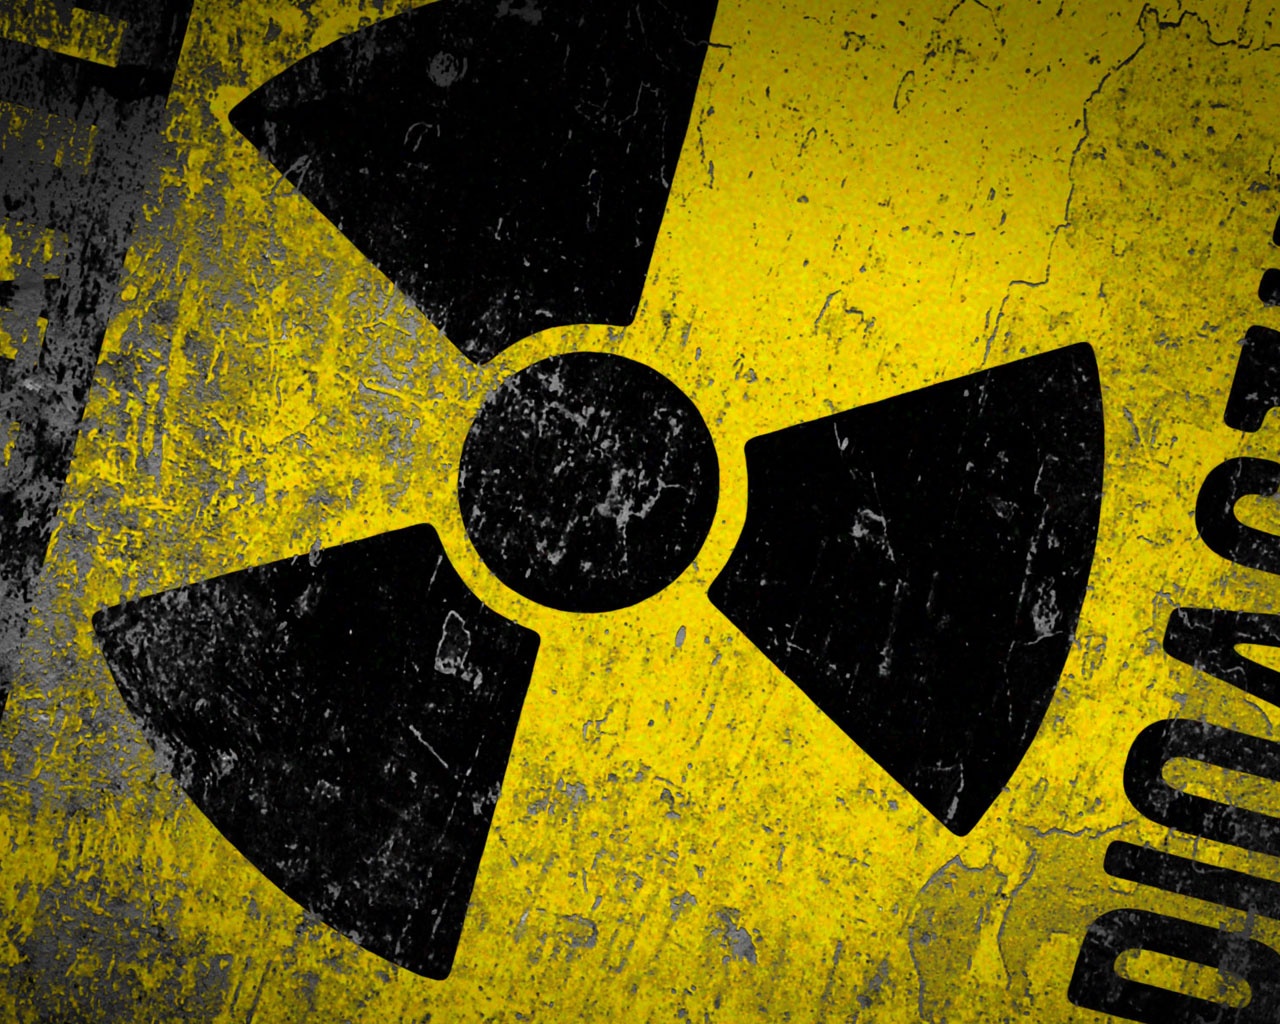 Србија, нуклеарна депонија: Како смо постали жртве "збрињавања" радиоактивног отпада